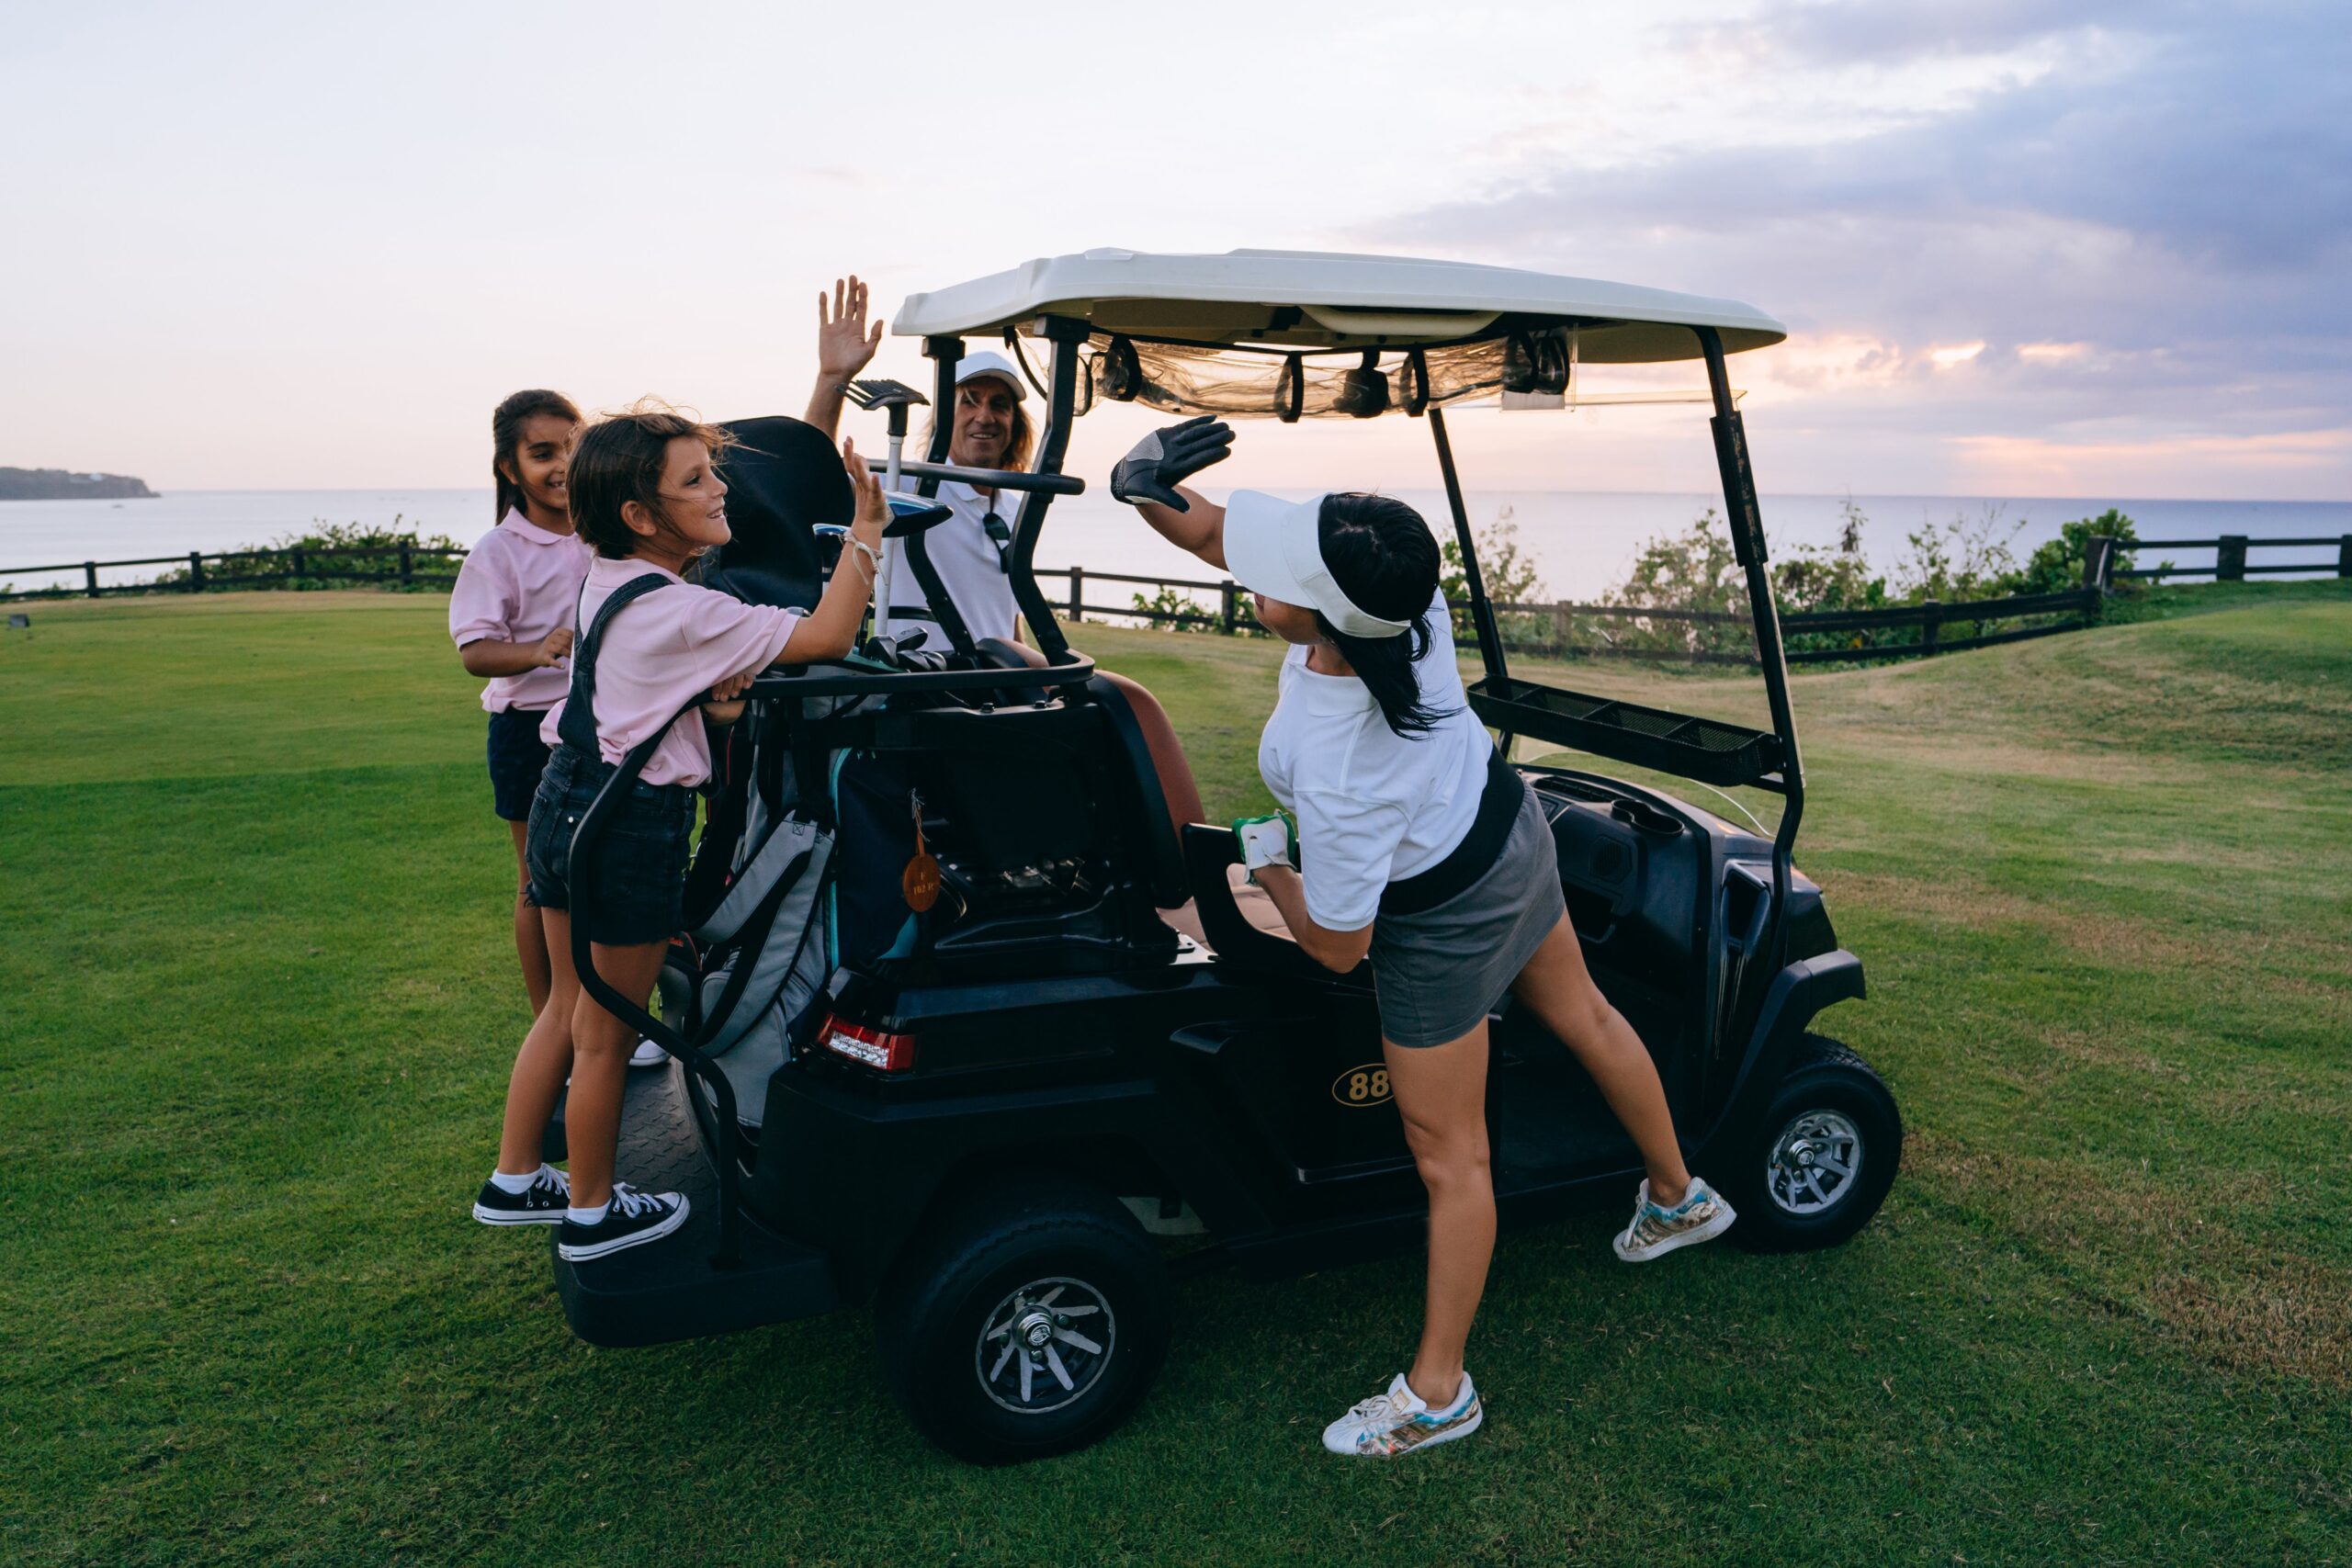 How Long Do Golf Cart Batteries Last?